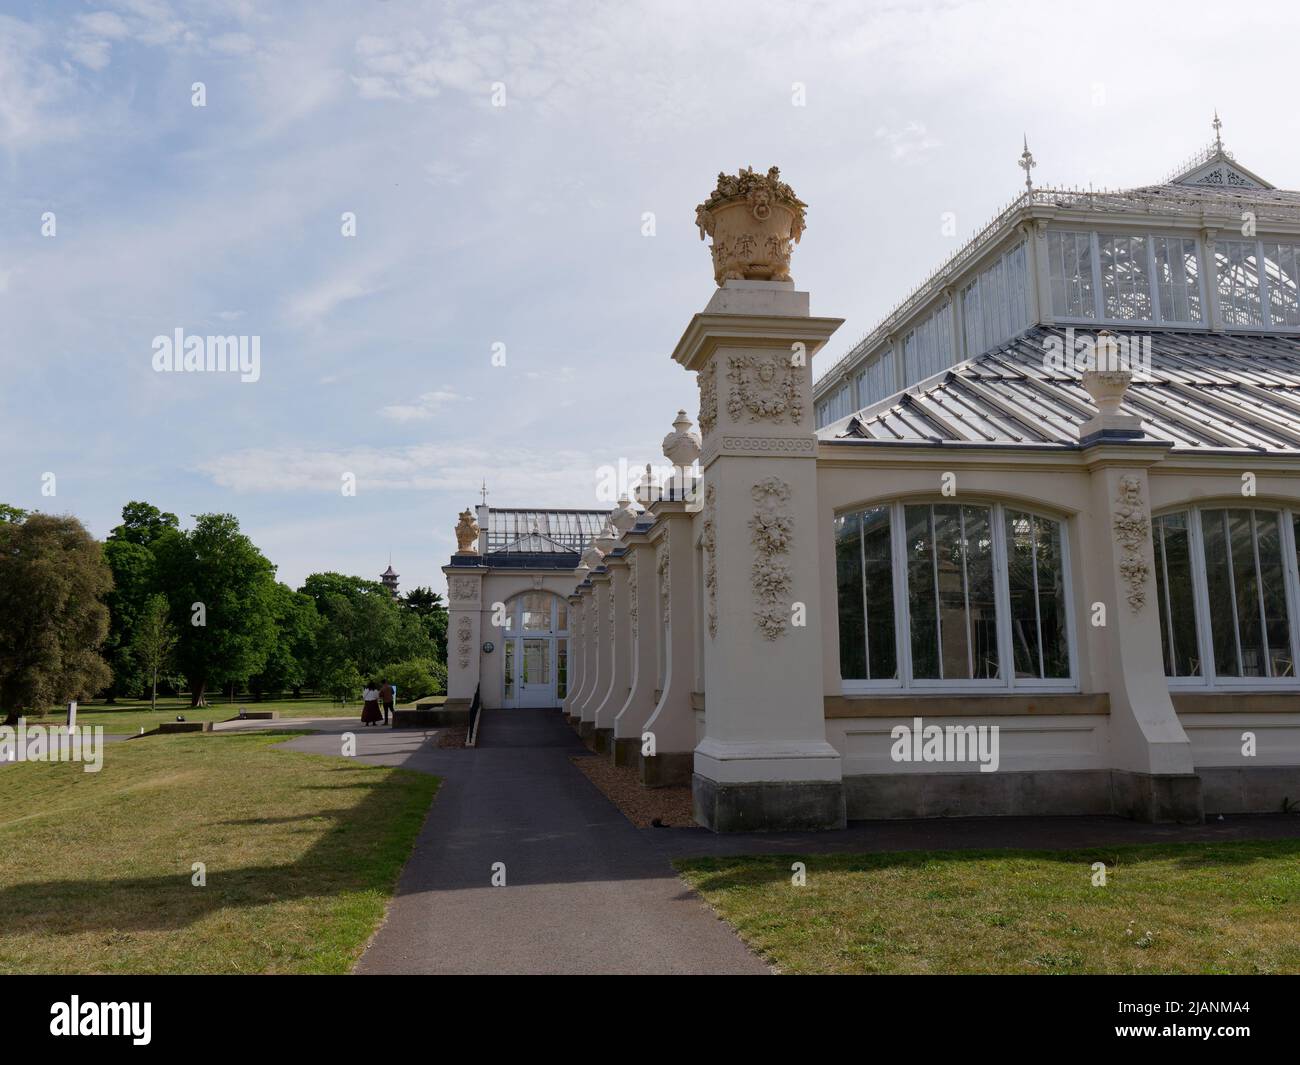 Richmond, Grand Londres, Angleterre, 18 mai 2022: Jardins botaniques royaux Kew. Vue latérale de la maison Temperate située dans une pelouse et des arbres. Banque D'Images